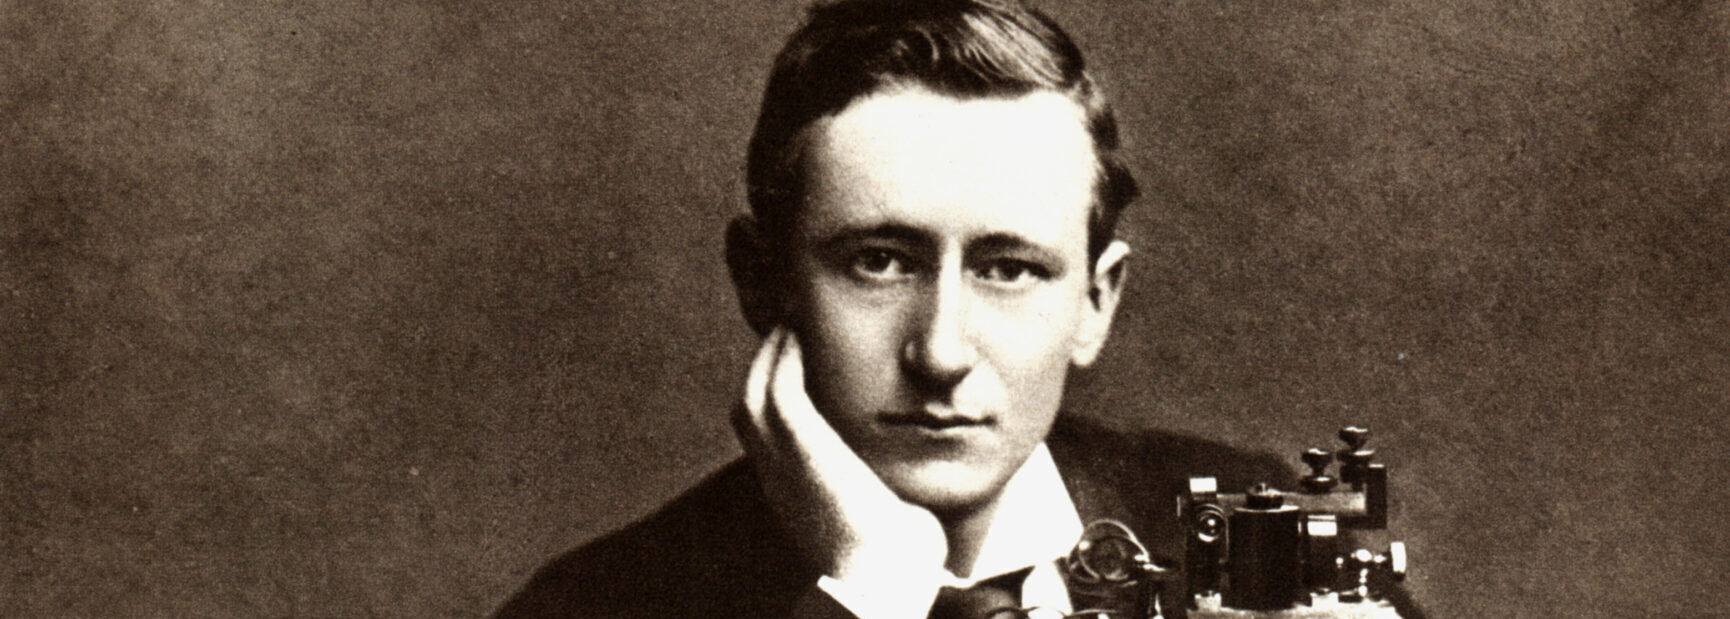 Guglielmo Marconi, il genio italiano che ha cancellato le distanze